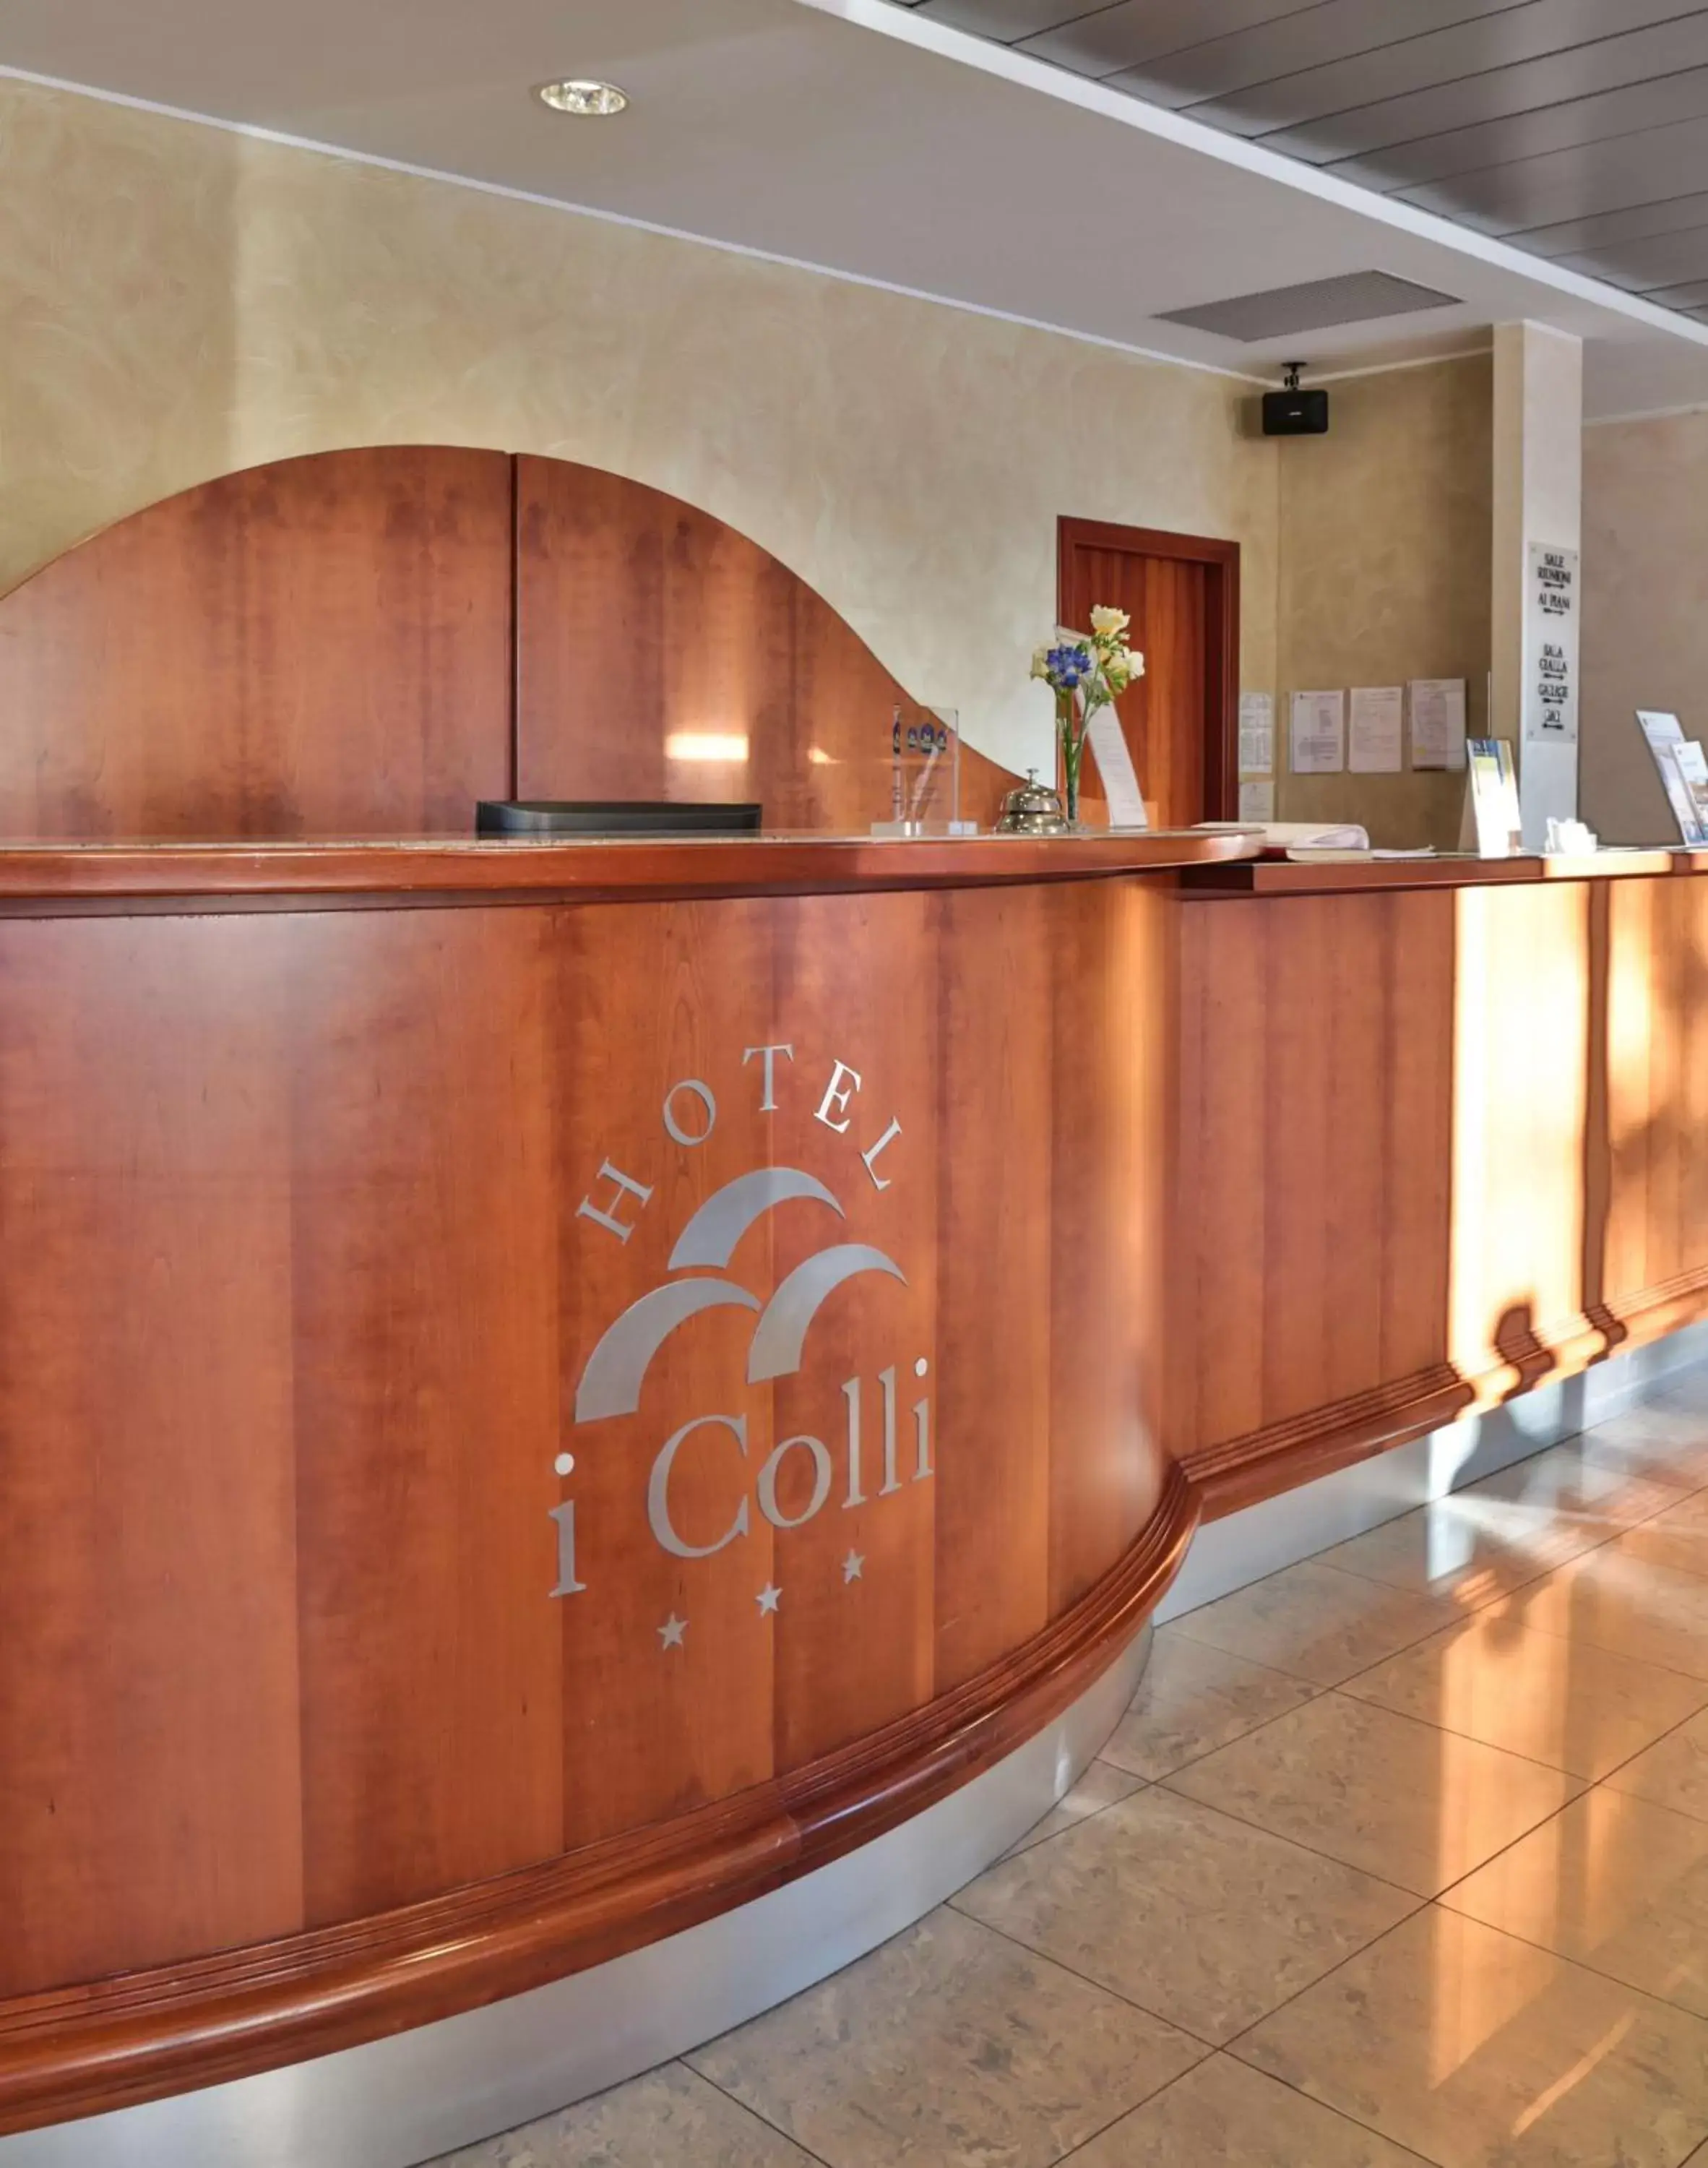 Lobby or reception, Lobby/Reception in Best Western Hotel I Colli